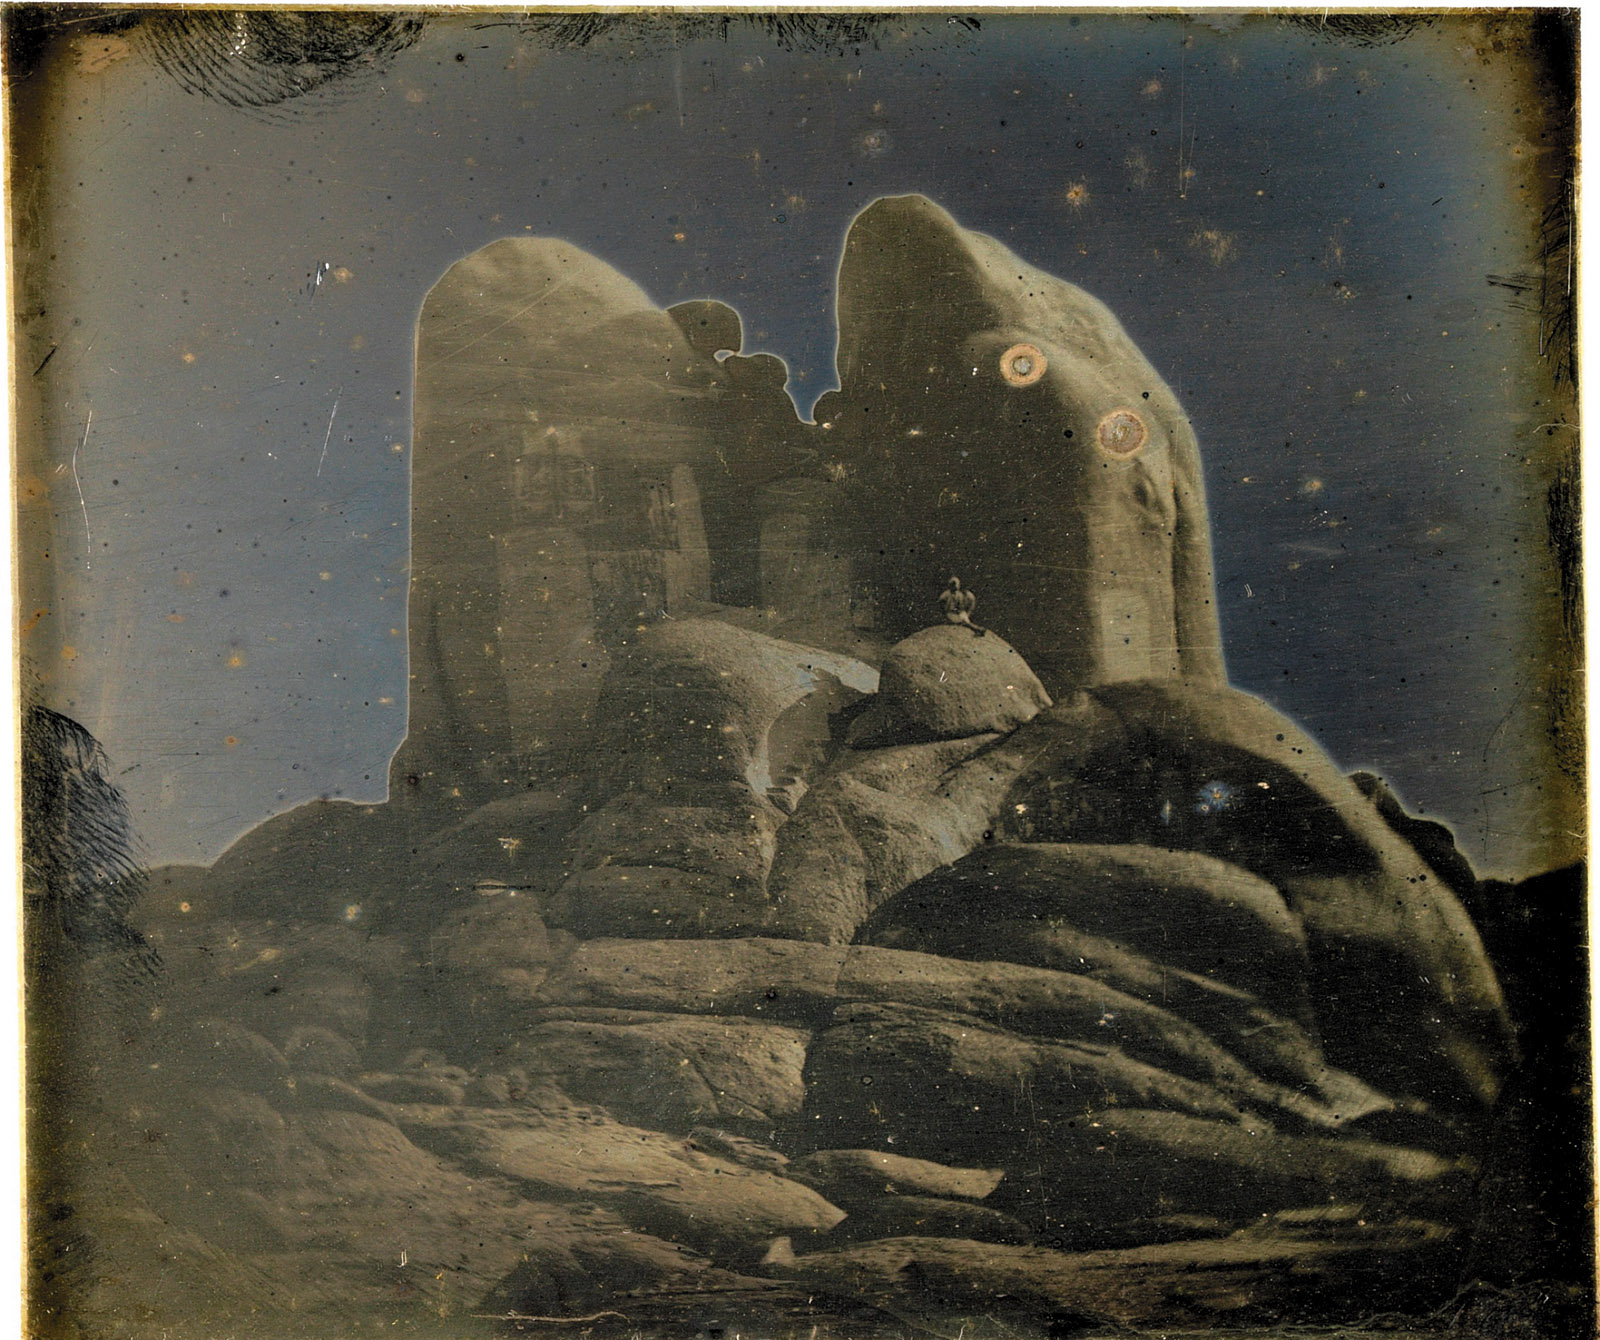 Rocks, Philae, Daguerreotype by Girault de Prangey